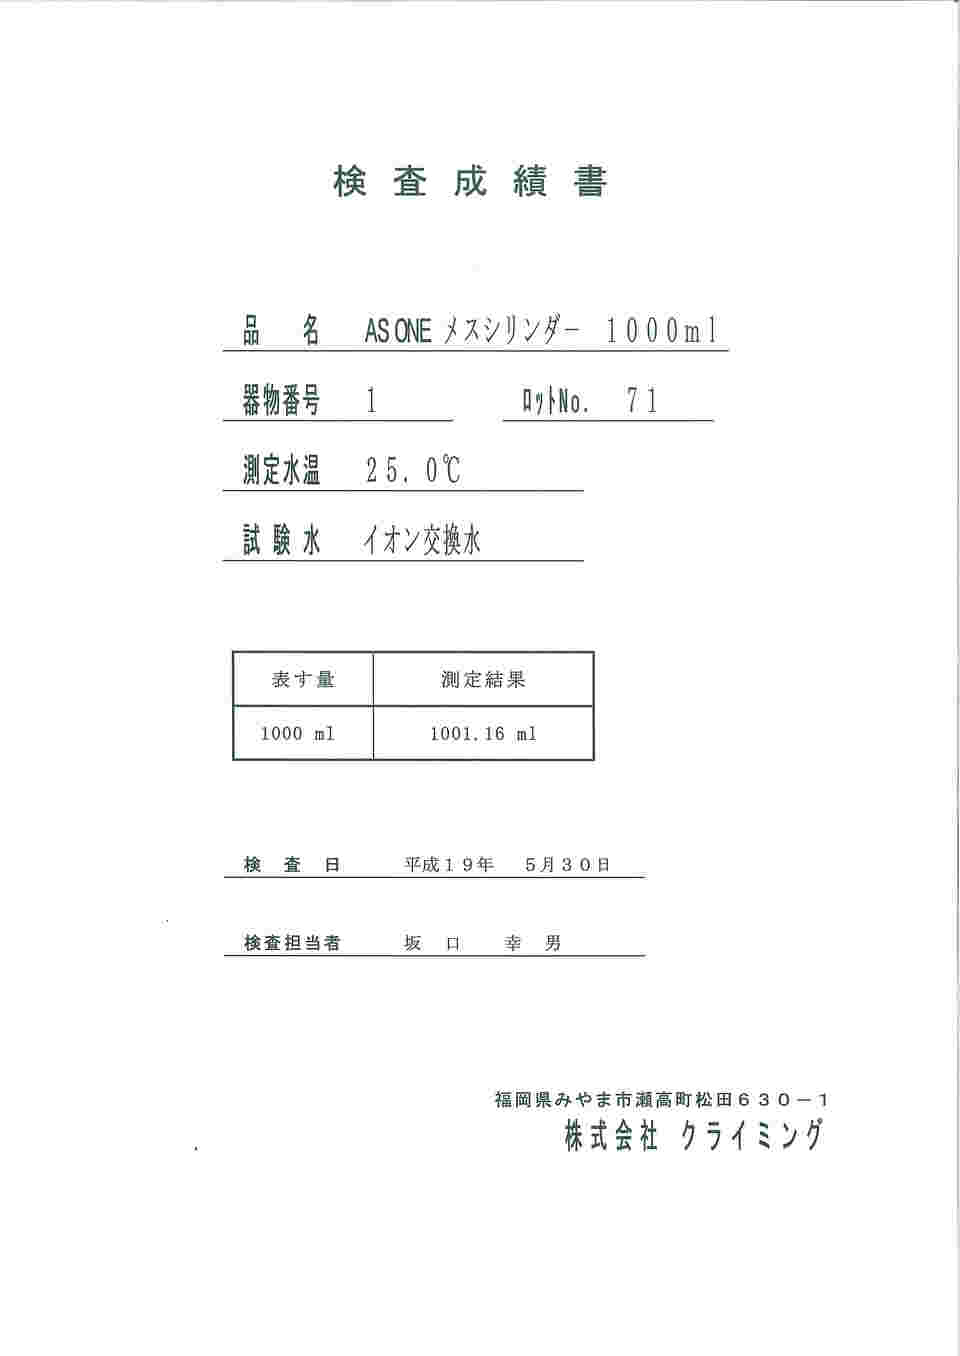 61-9600-99 ホールピペット 50mL 検査成績書付 CL2070-27 【AXEL